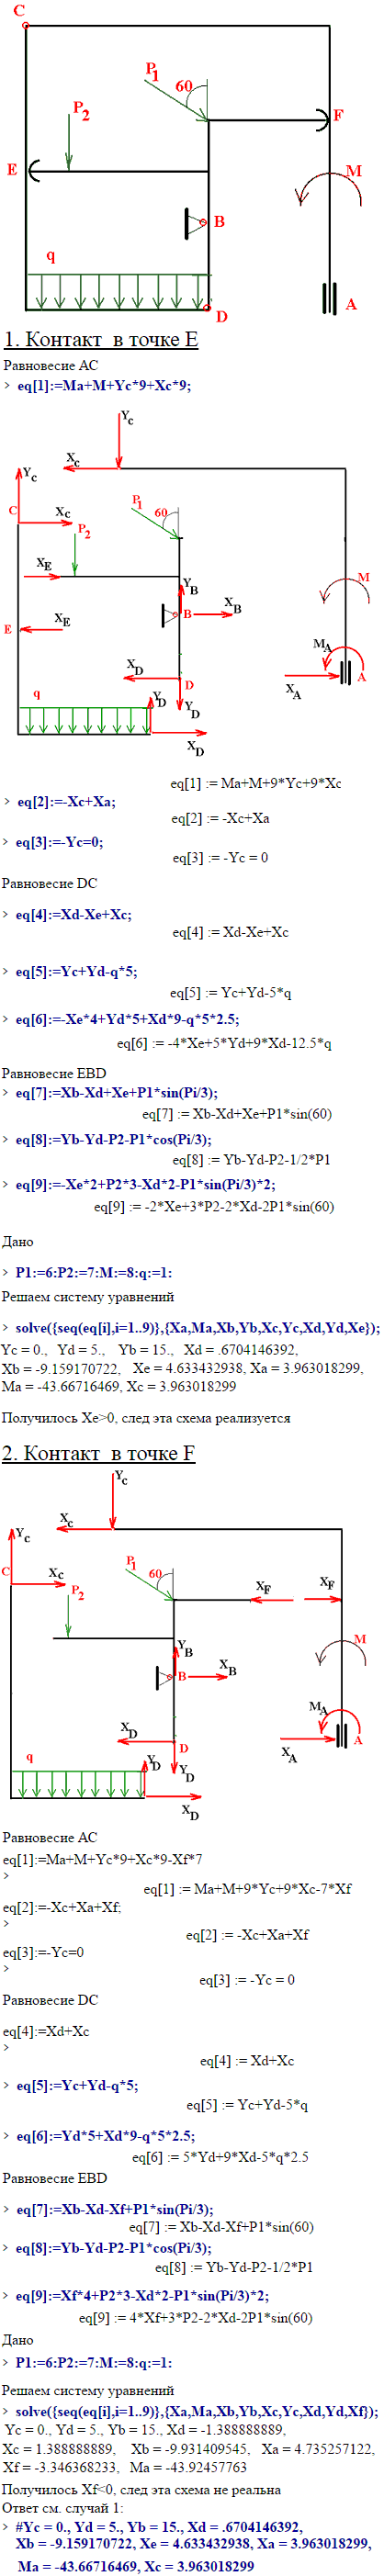 Задание С9 вариант 9. P1=6 кН, P2=7 кН, M=8 кН*м, q=1 кН/м.